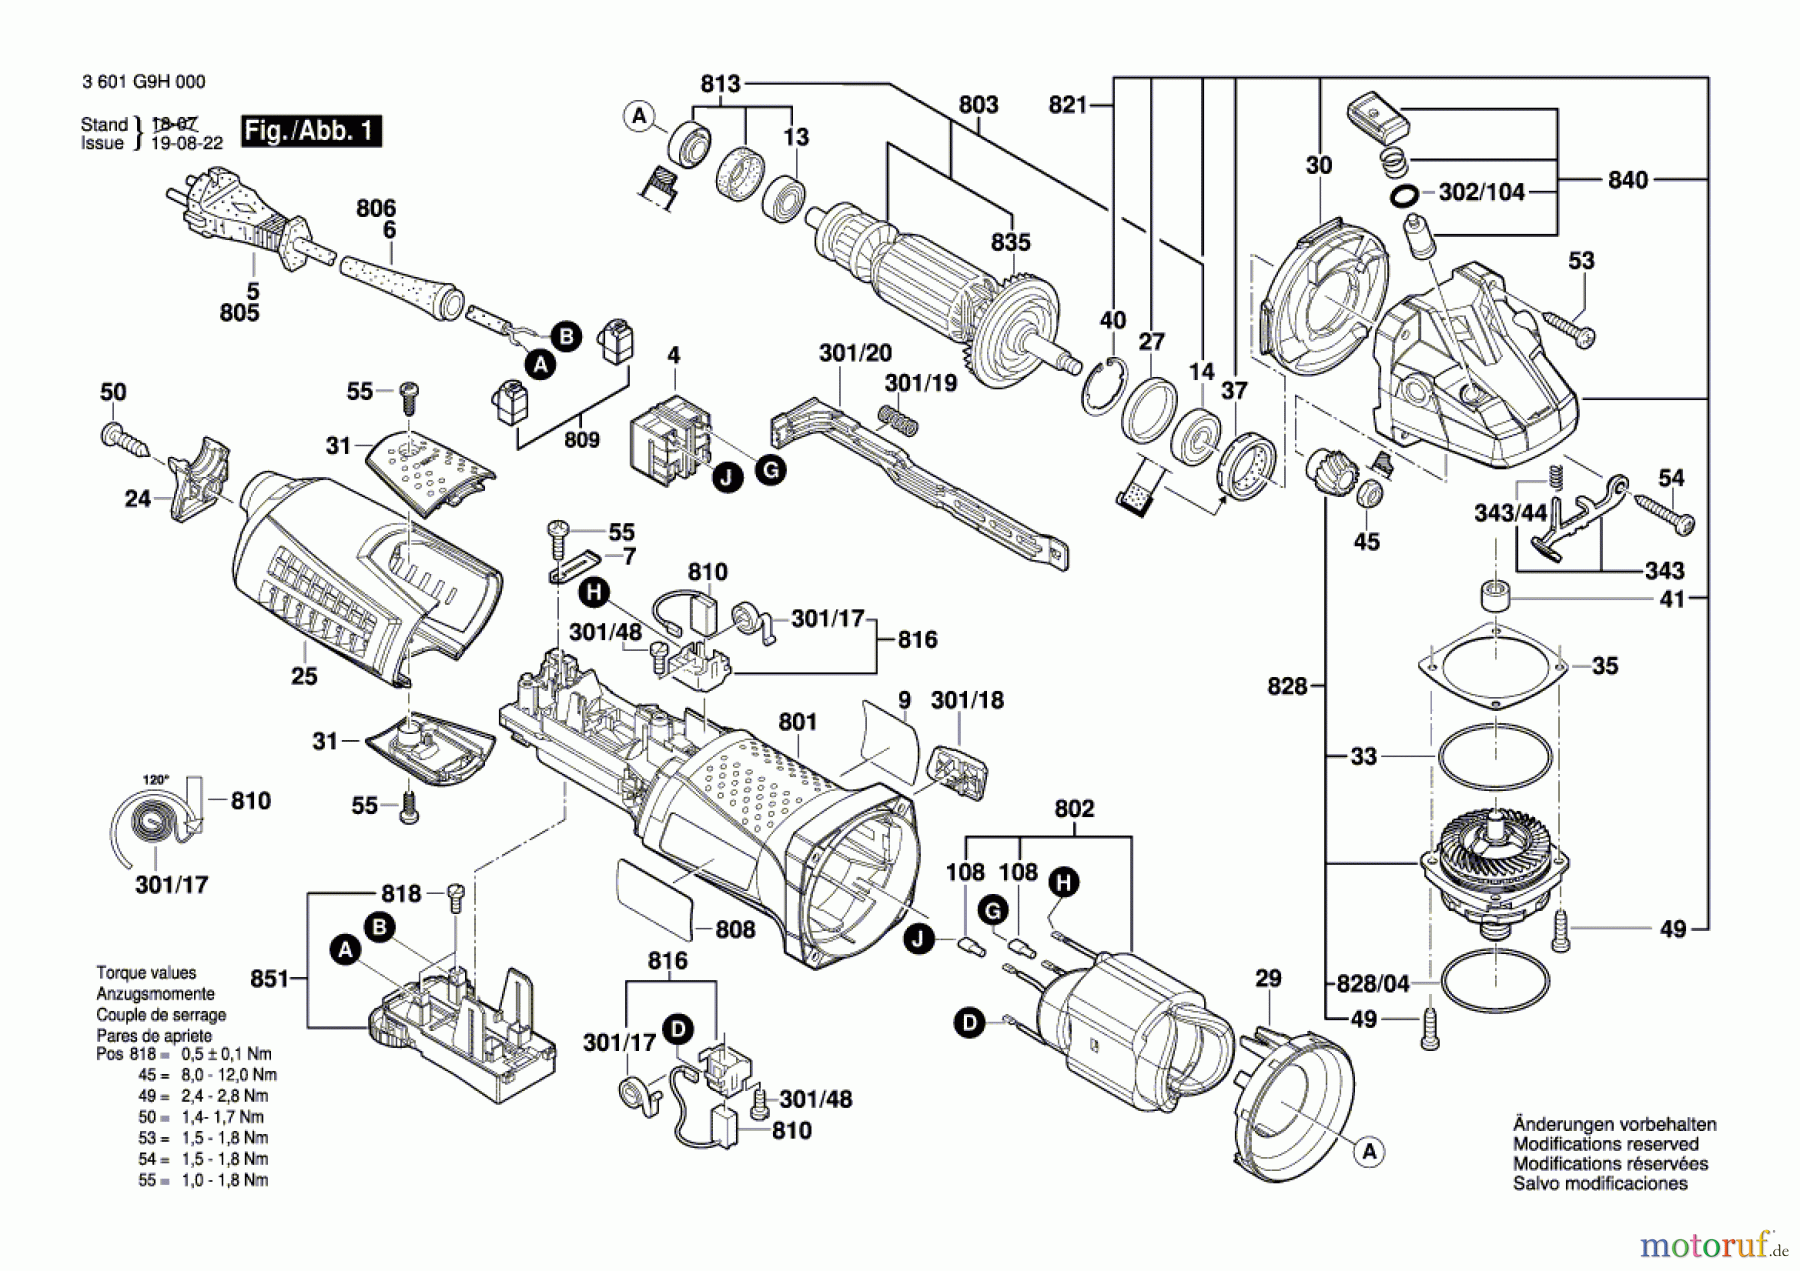  Bosch Werkzeug Winkelschleifer GWS 17-125 CIE Seite 1